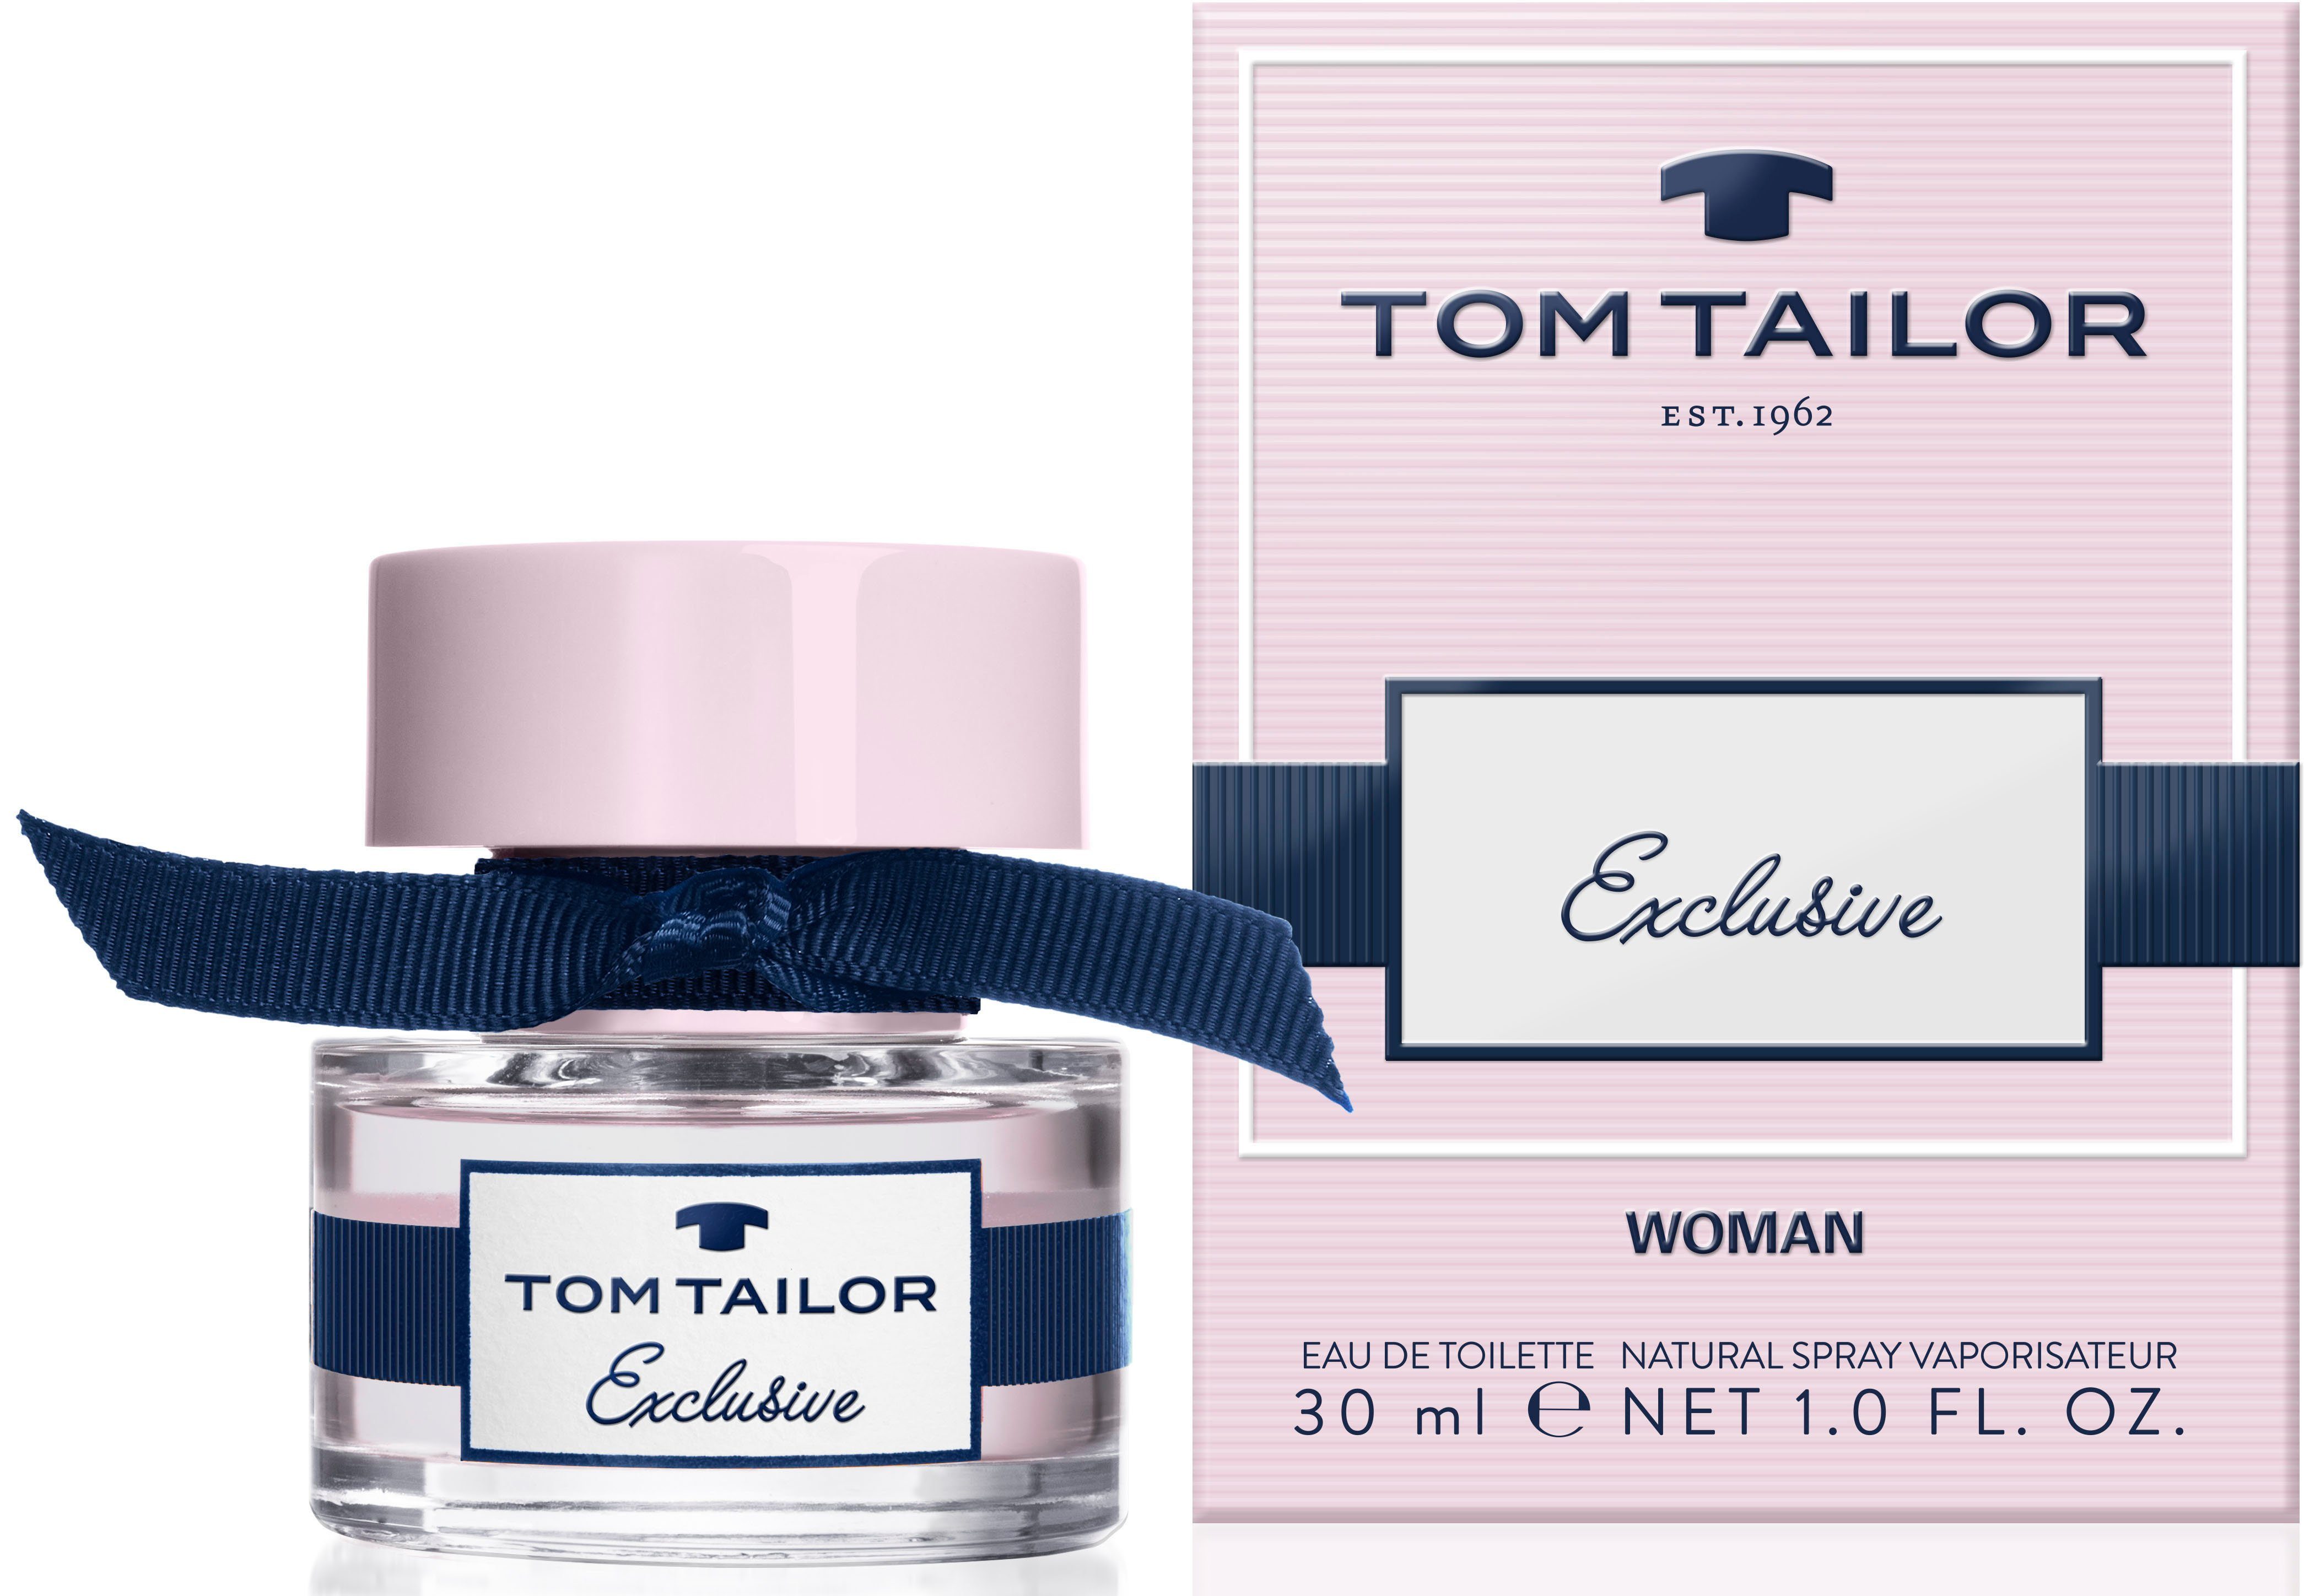 TOM Exclusive Eau Toilette Woman TAILOR de